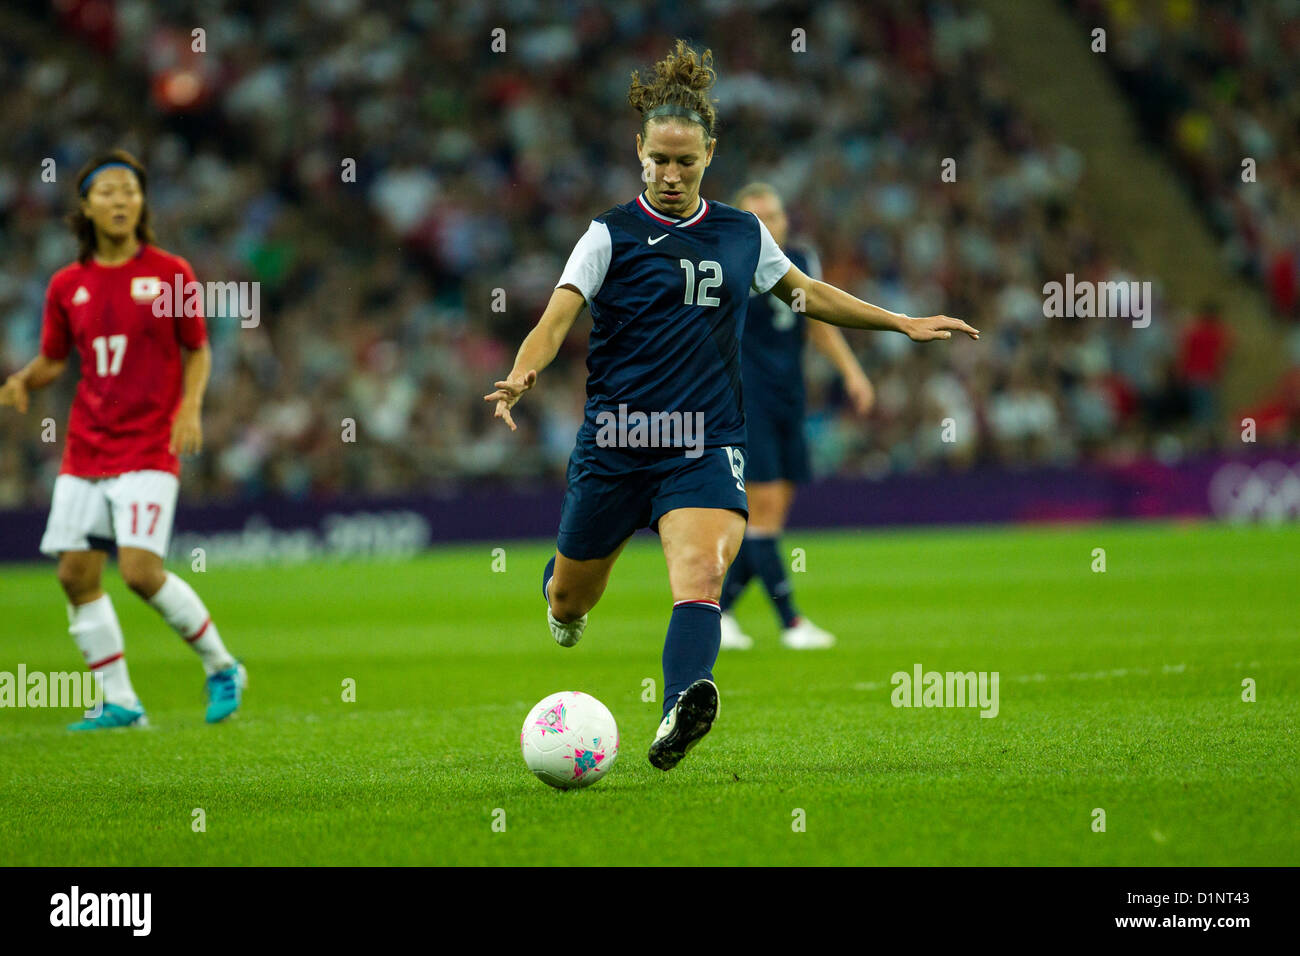 Lauren Cheney (USA)-12, USA remporte l'or sur le Japon en femmes Football (soccer) aux Jeux Olympiques d'été, Londres 2012 Banque D'Images